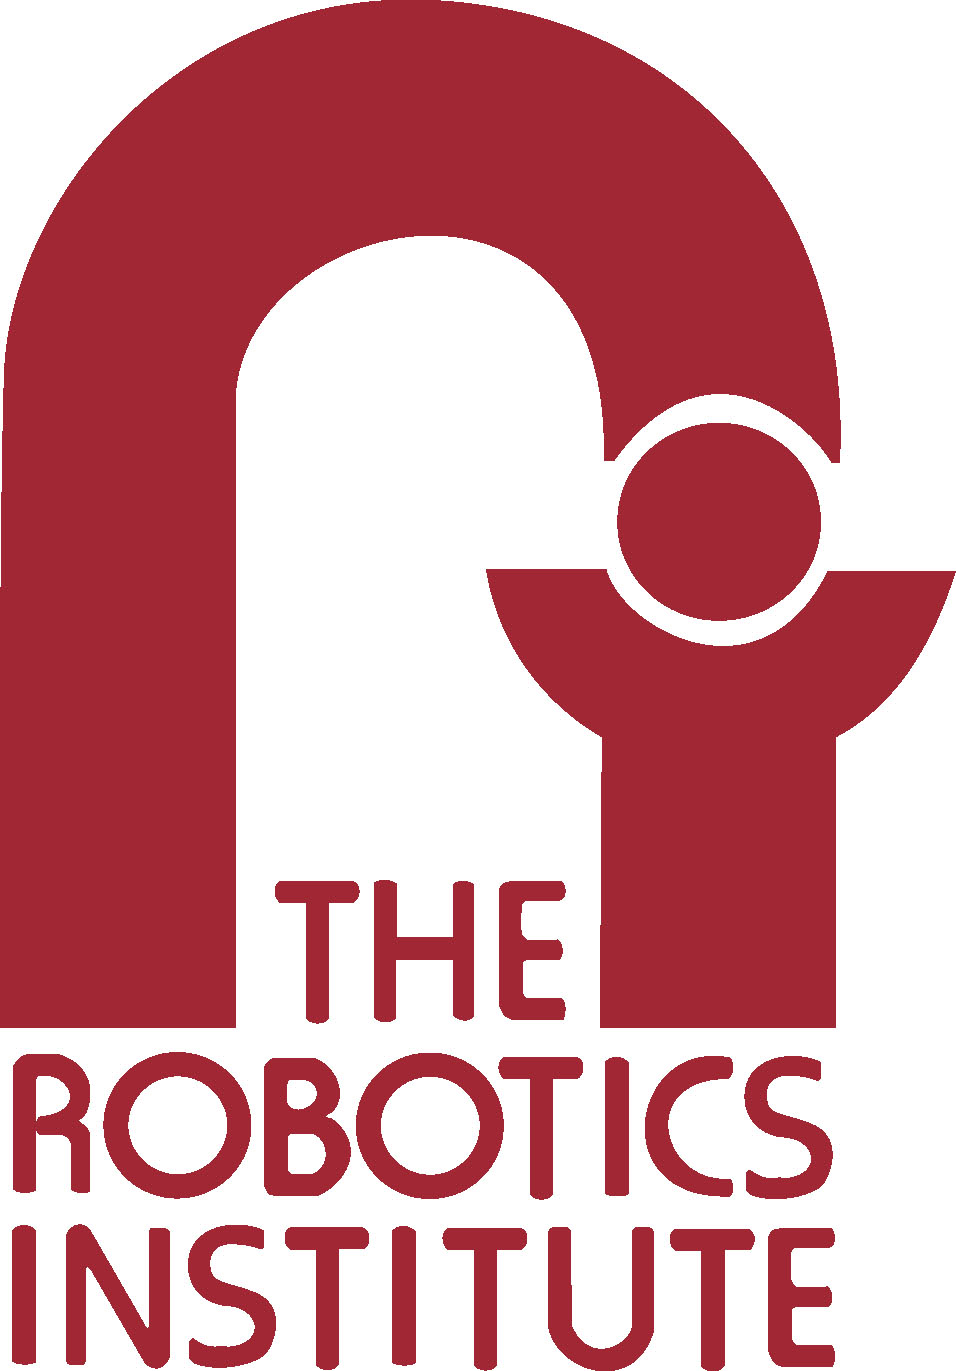 CMU Robotics